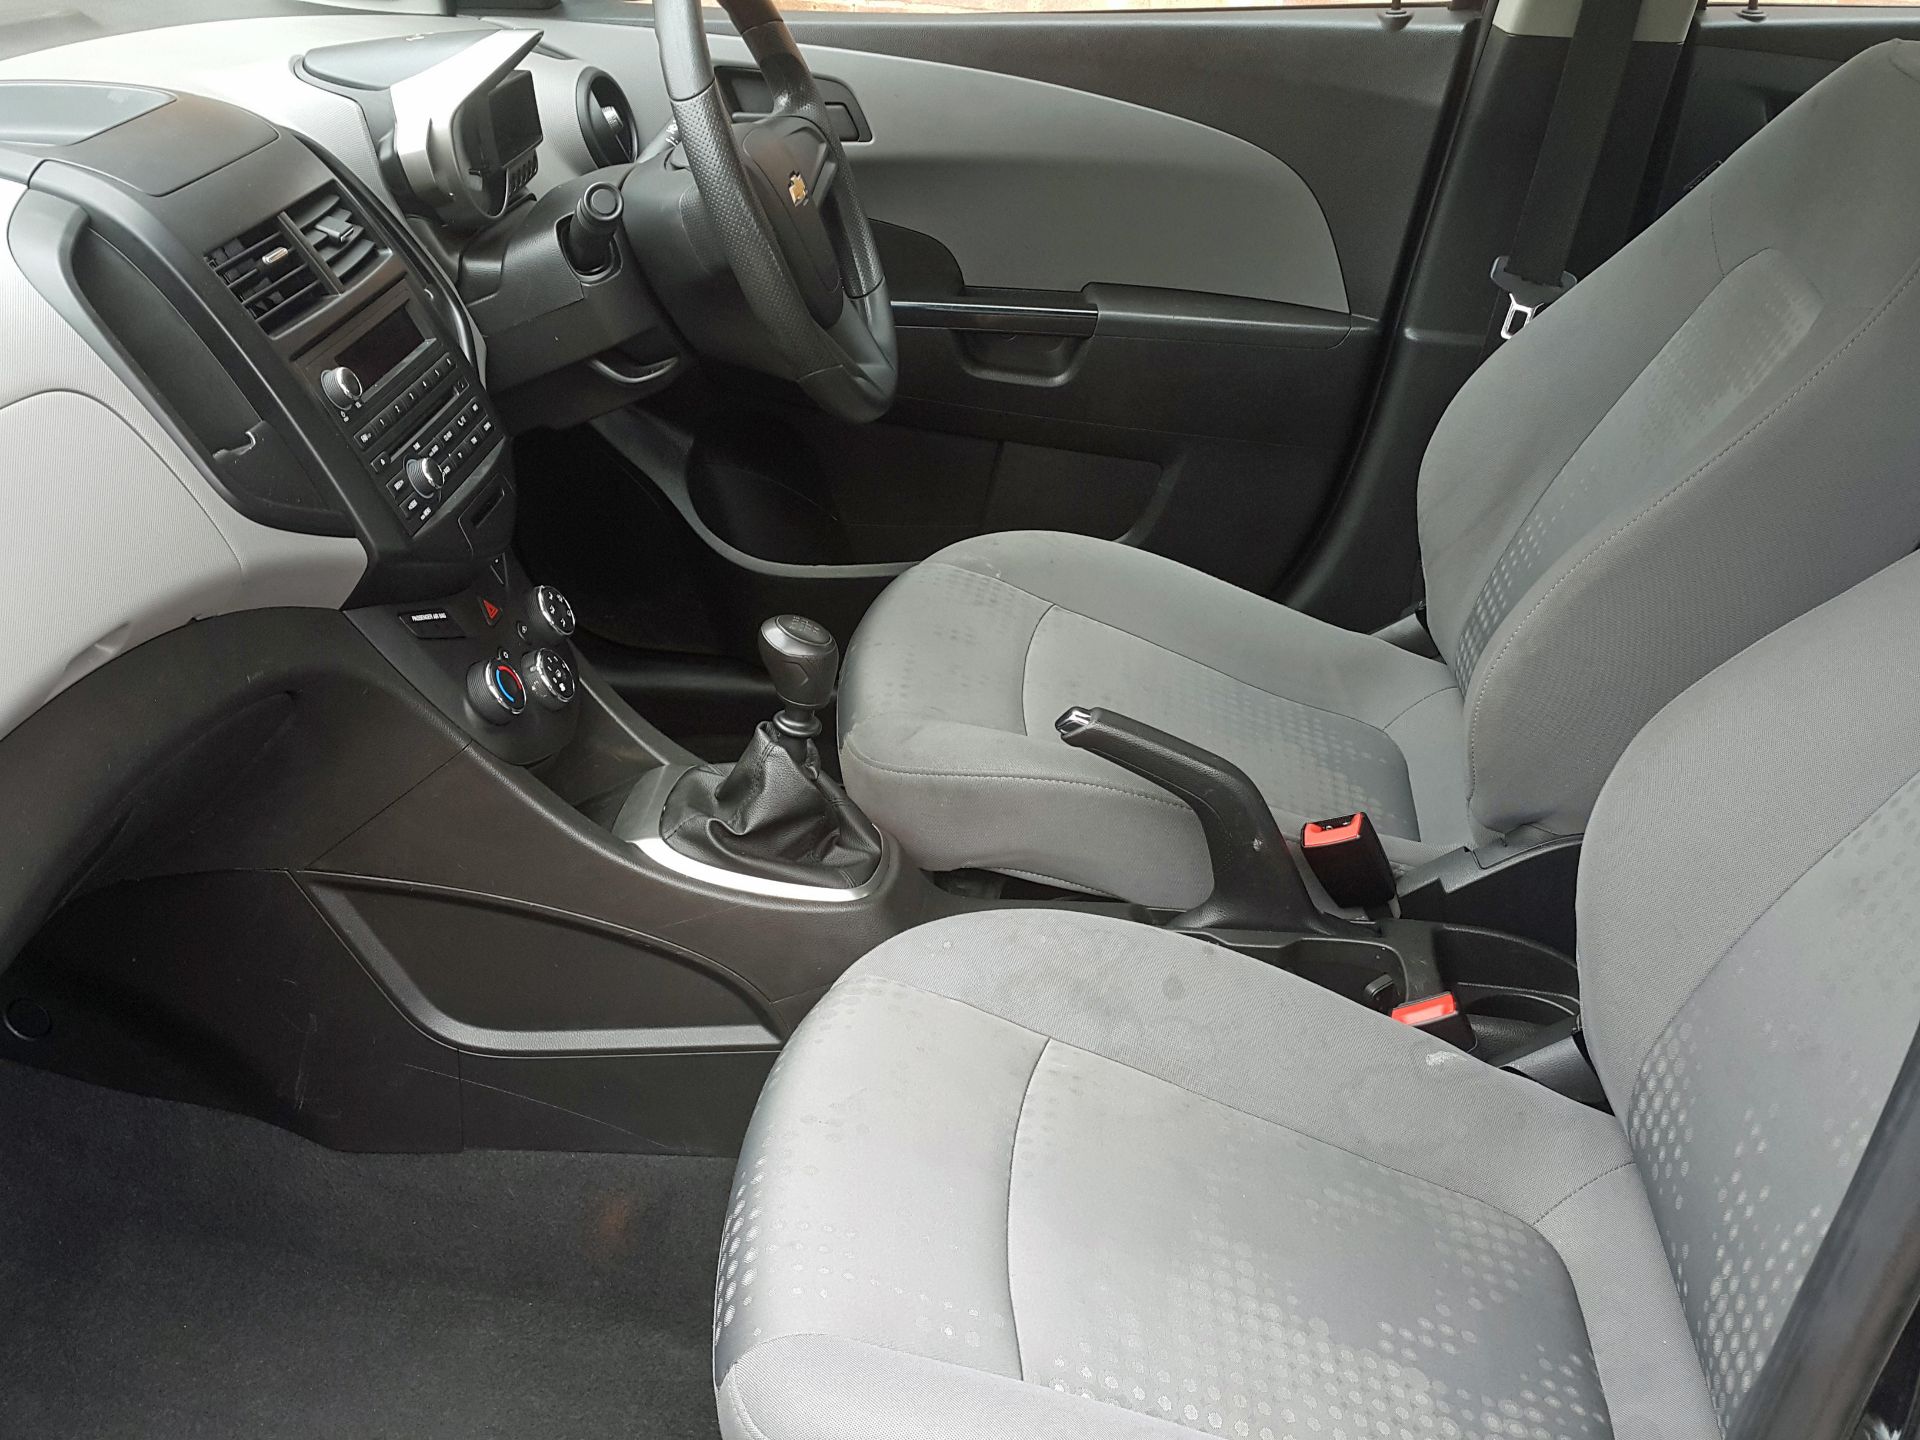 Chevrolet Aveo 1.2LS (S/S) 5 Door 2012 (62 Reg), Only 49000 Miles, Full Service History - Image 16 of 18